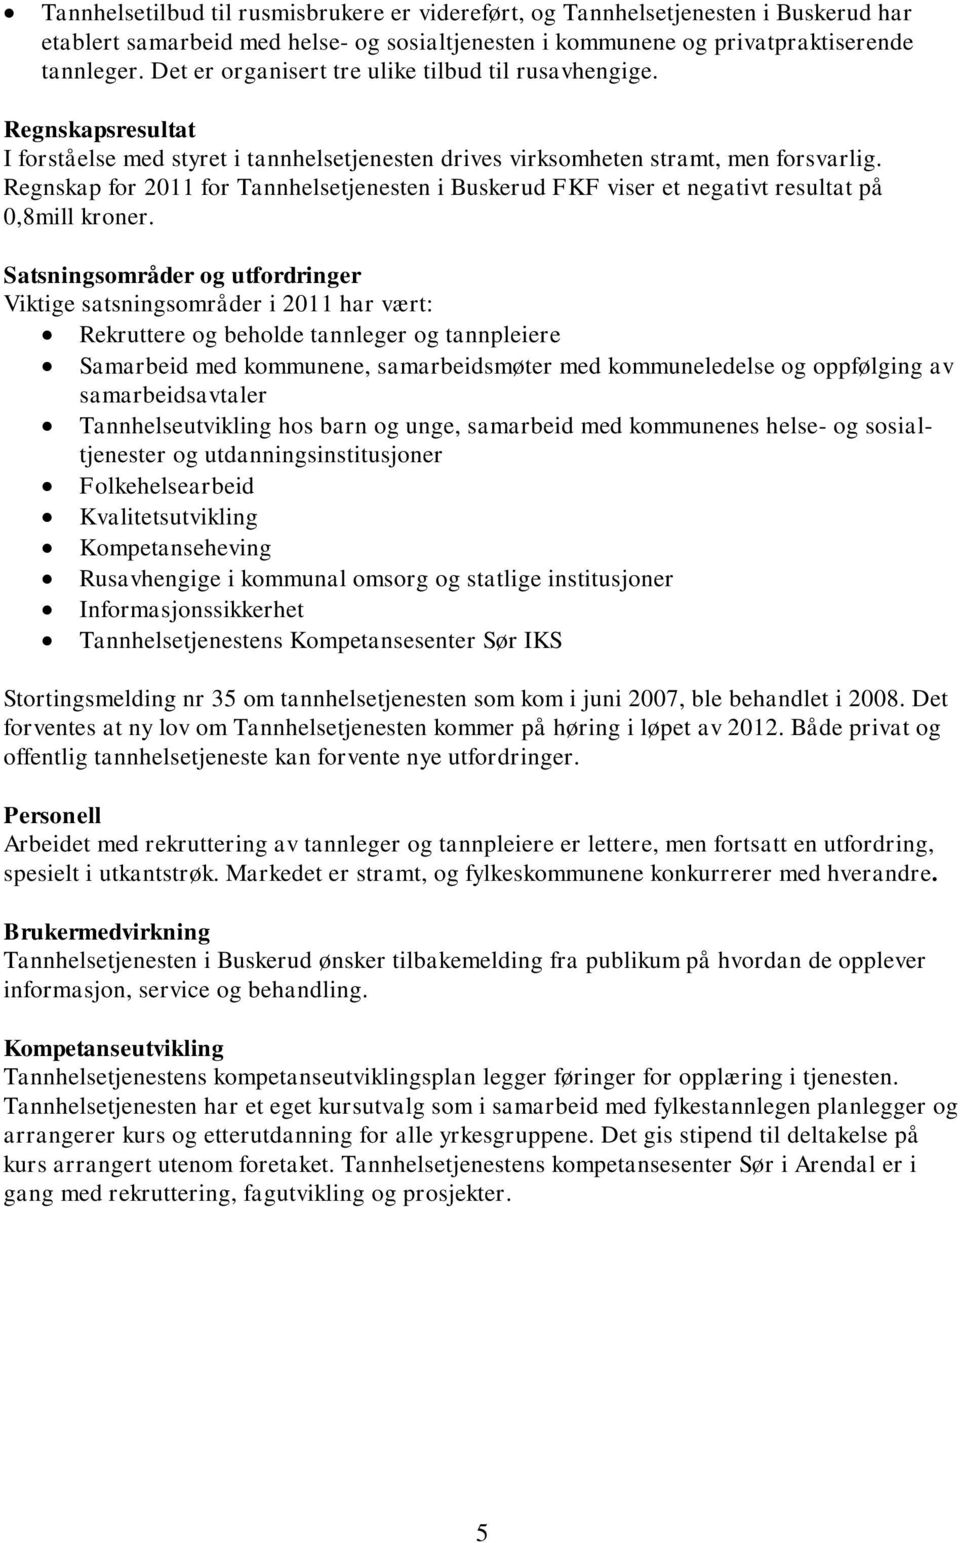 Regnskap for 2011 for Tannhelsetjenesten i Buskerud FKF viser et negativt resultat på 0,8mill kroner.